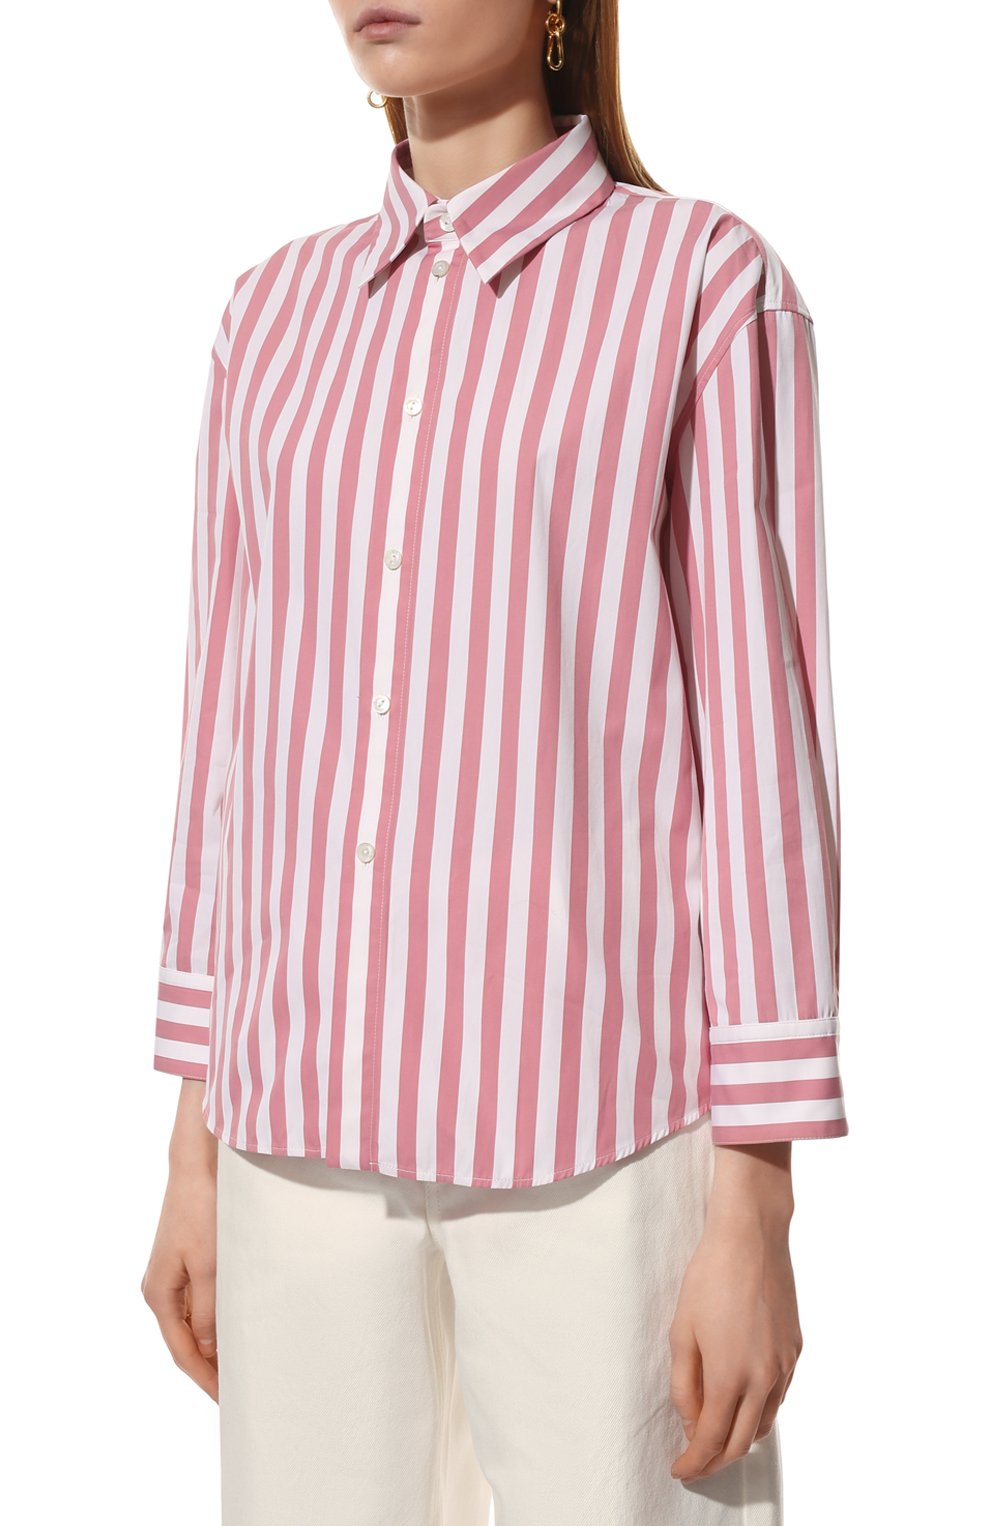 Женская хлопковая рубашка JIL SANDER светло-розового цвета, арт. JSPU600405-WU246010 | Фото 3 (Рукава: Длинные; Принт: Полоска; Женское Кросс-КТ: Рубашка-одежда; Длина (для топов): Стандартные; Материал внешний: Хлопок; Стили: Минимализм)